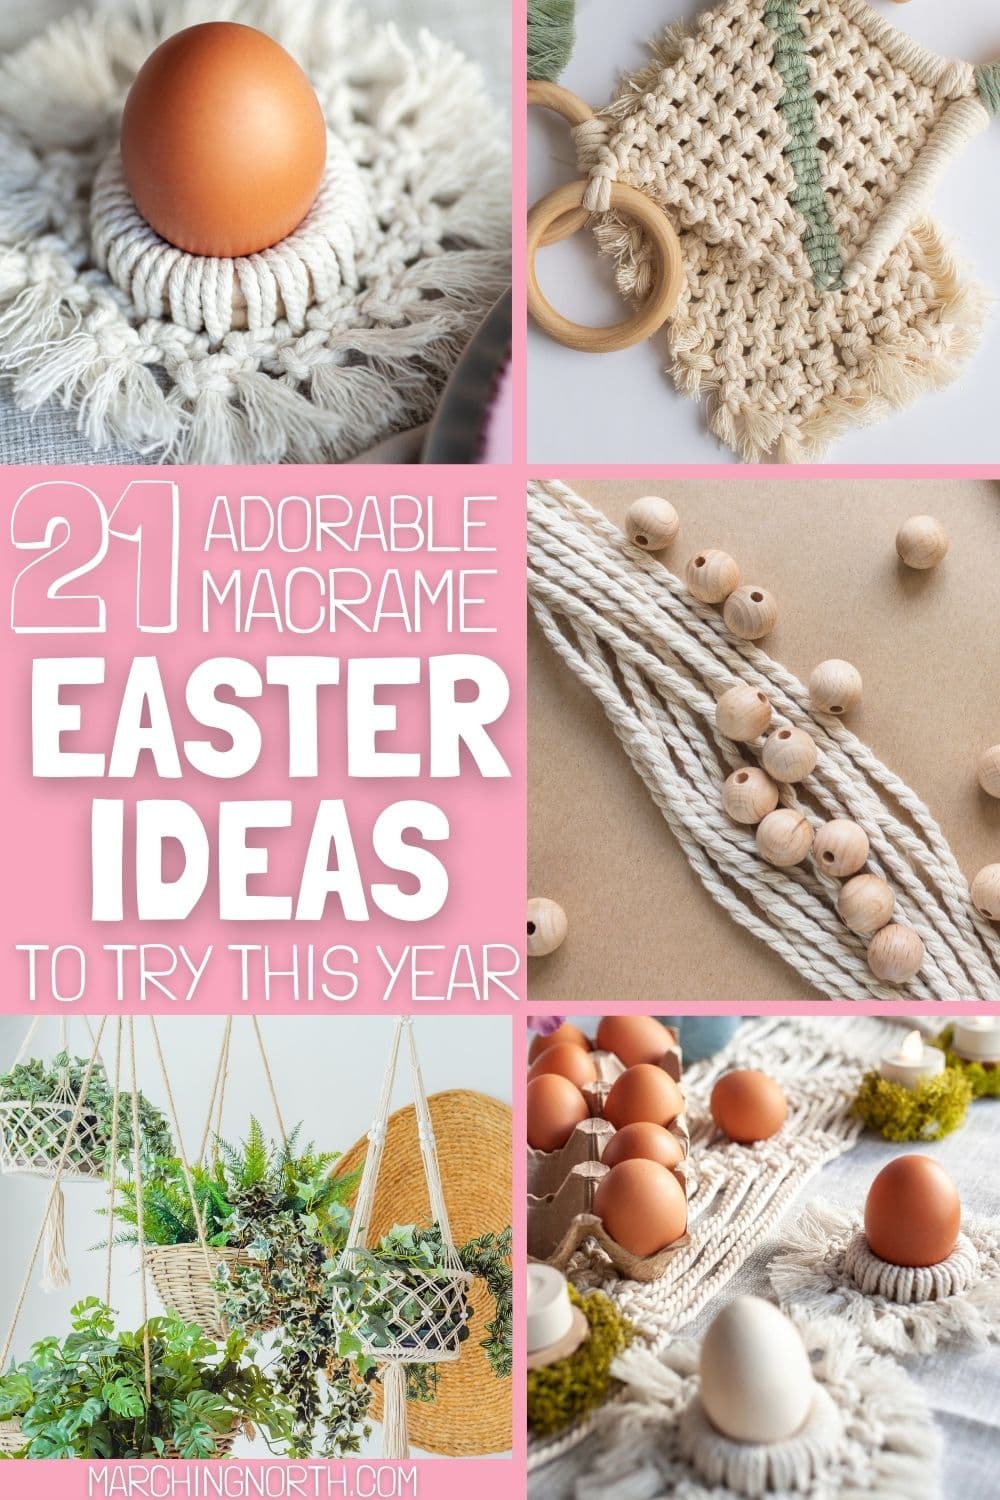 Pinterest pin for macrame Easter ideas post